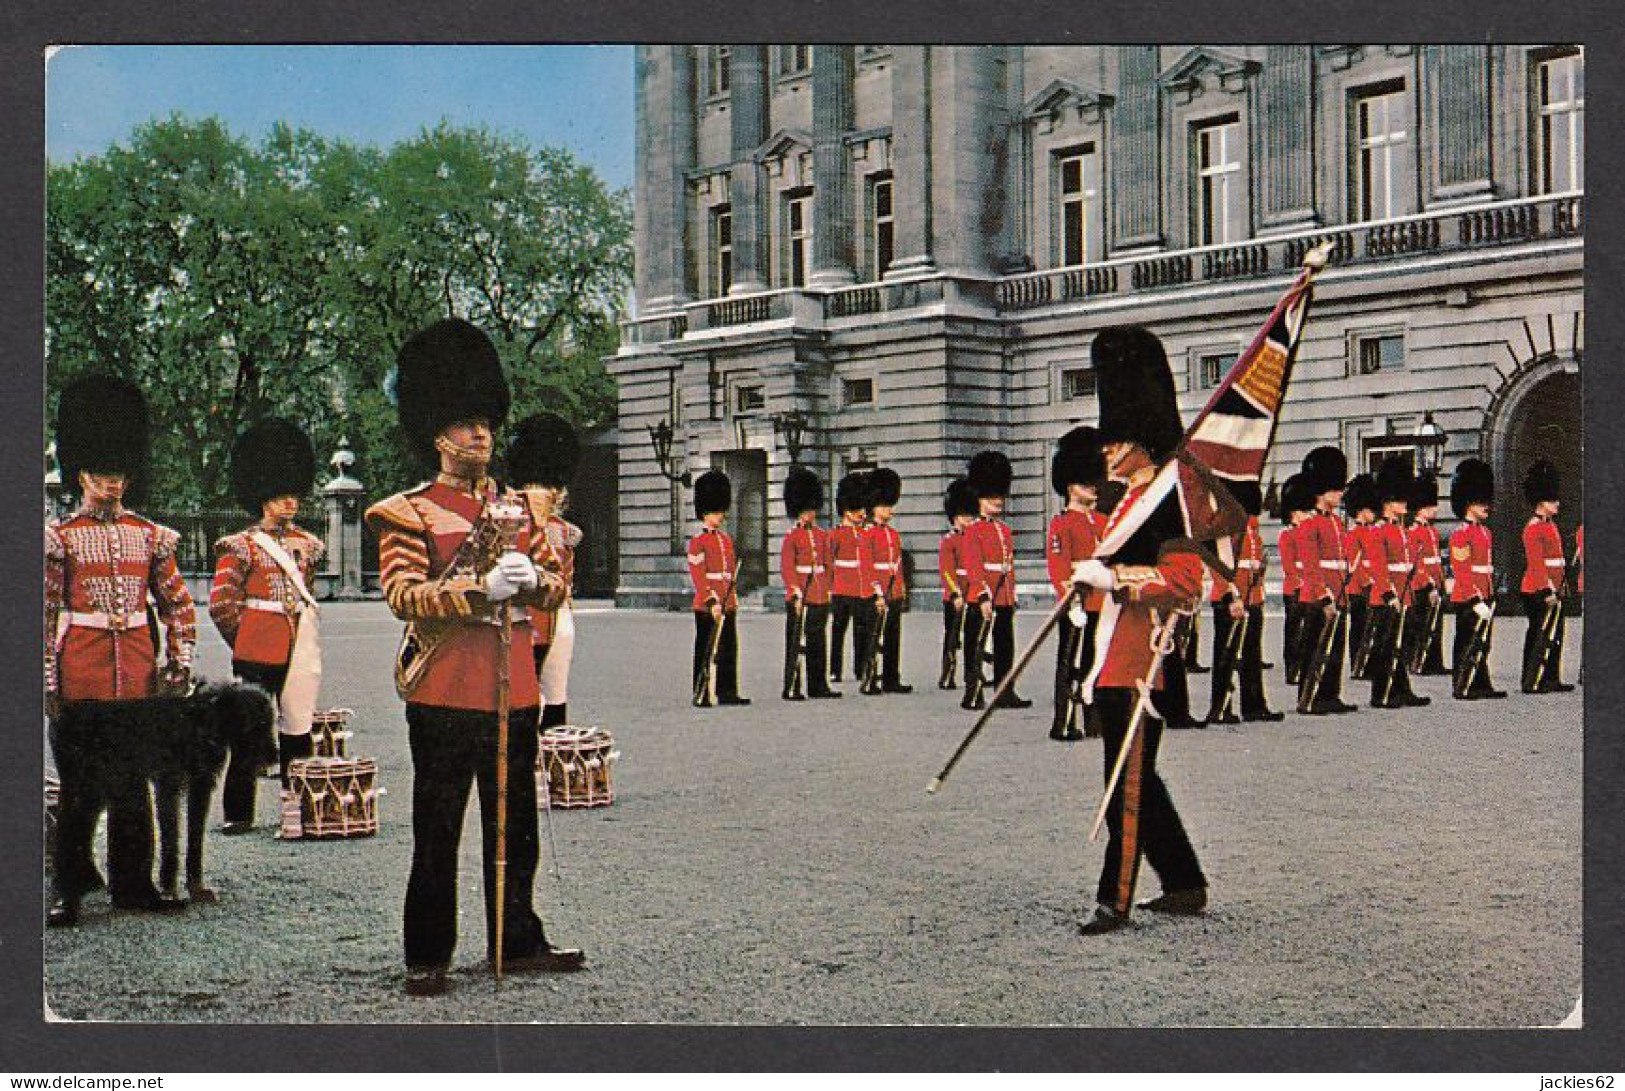 110977/ LONDON, Buckingham Palace, Changing The Guards Ceremony - Buckingham Palace